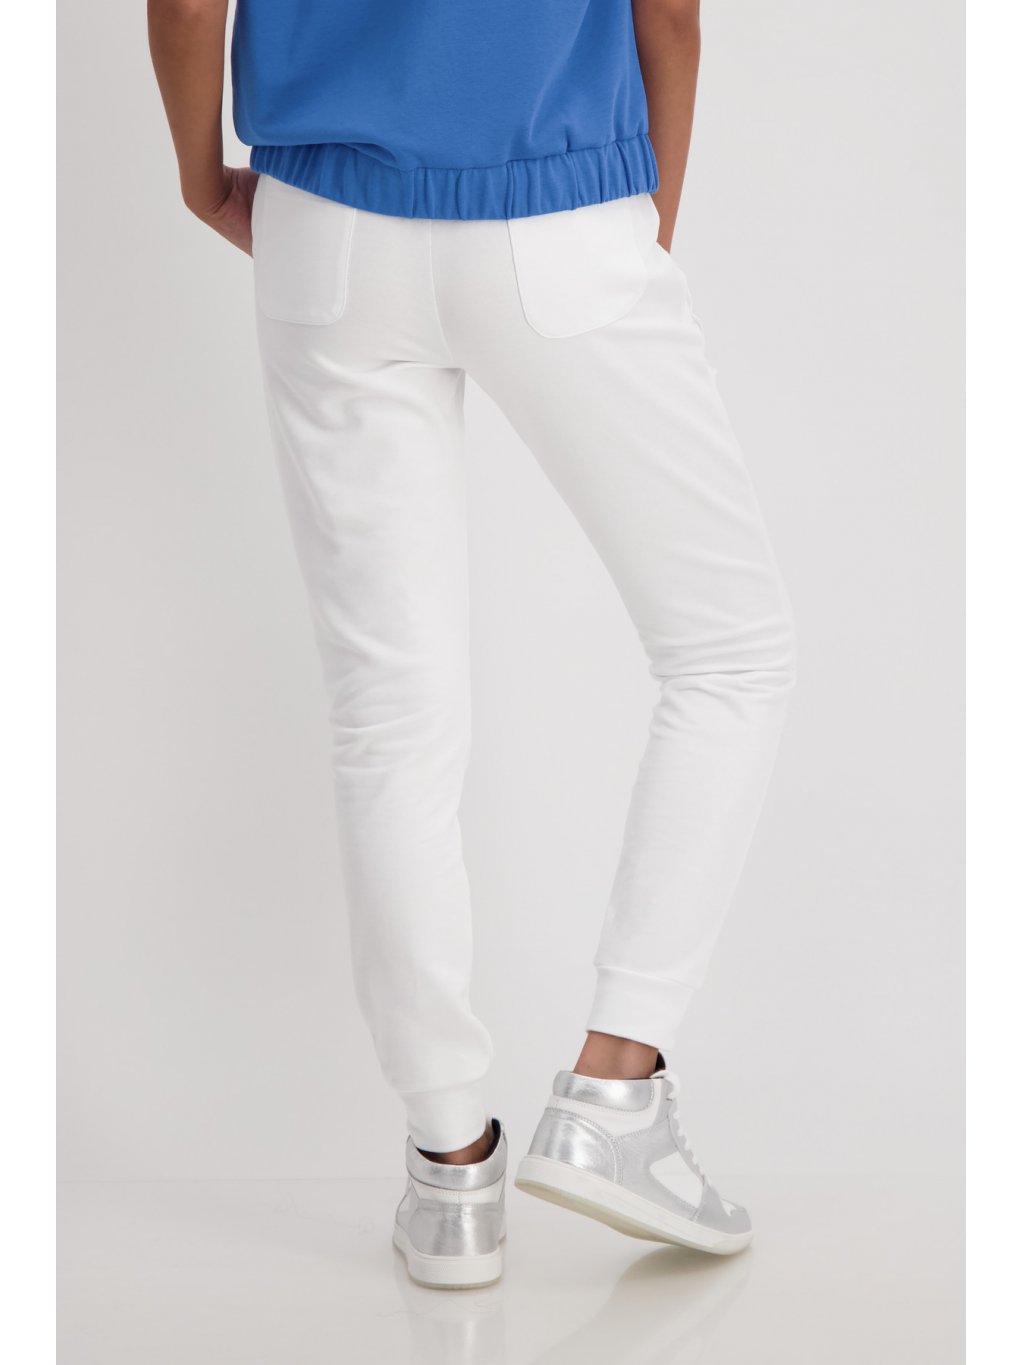 Kalhoty Monari 7213 bílé tepláky s modrou grafikou